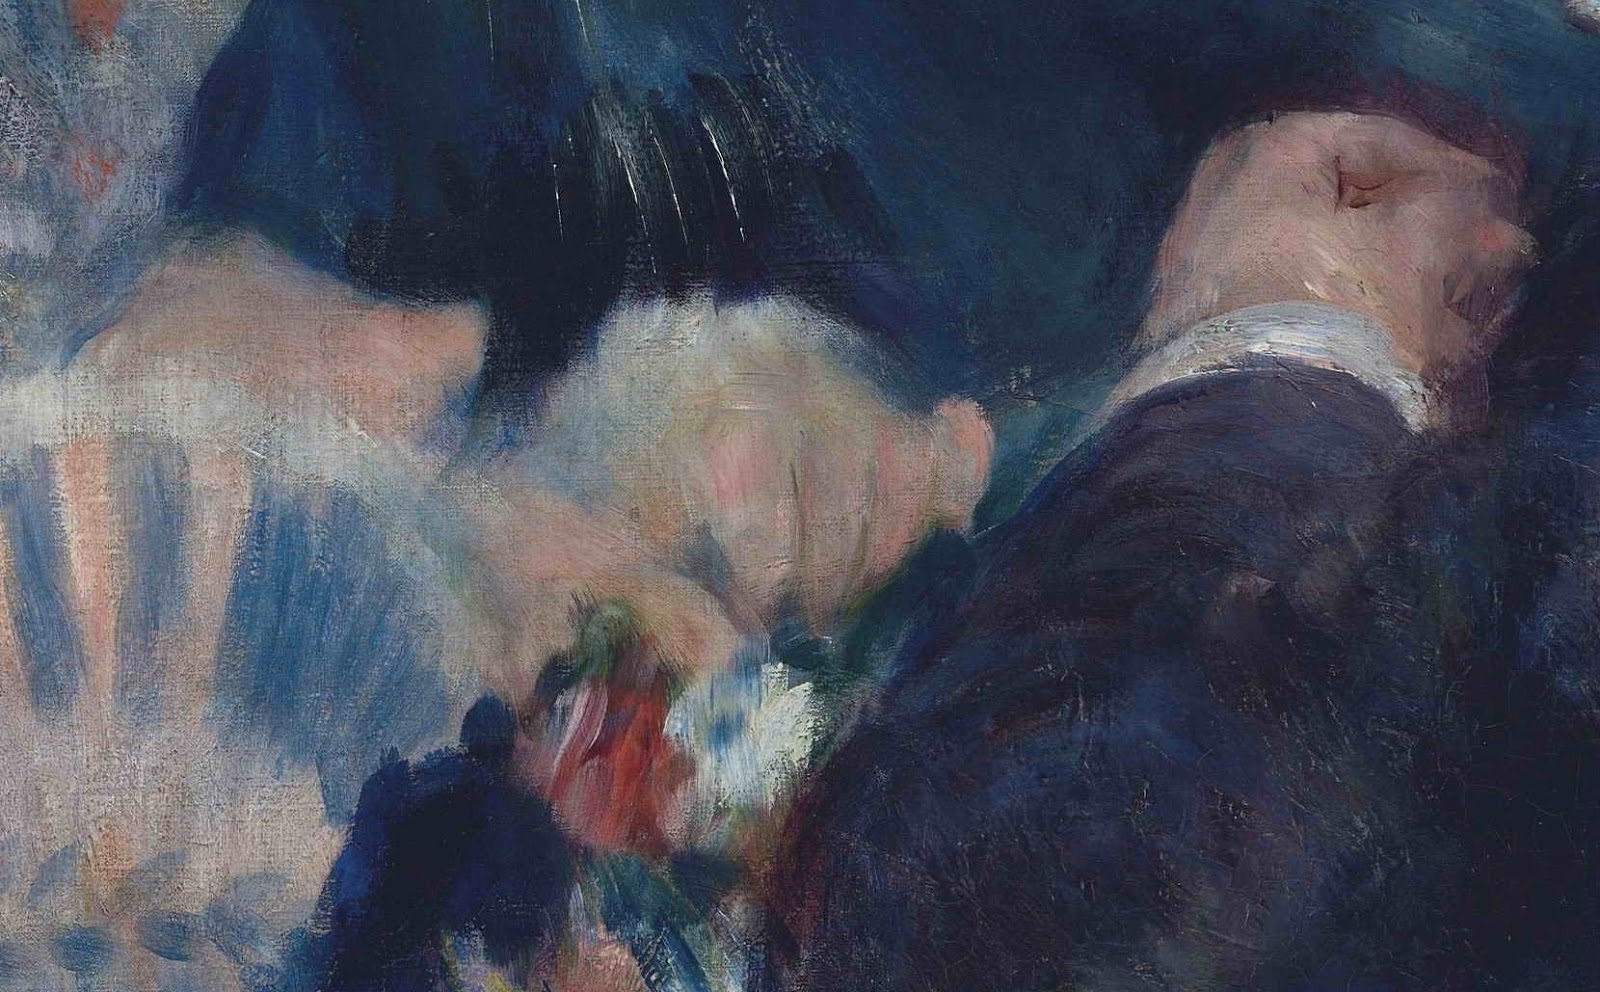 Pierre+Auguste+Renoir-1841-1-19 (429).JPG